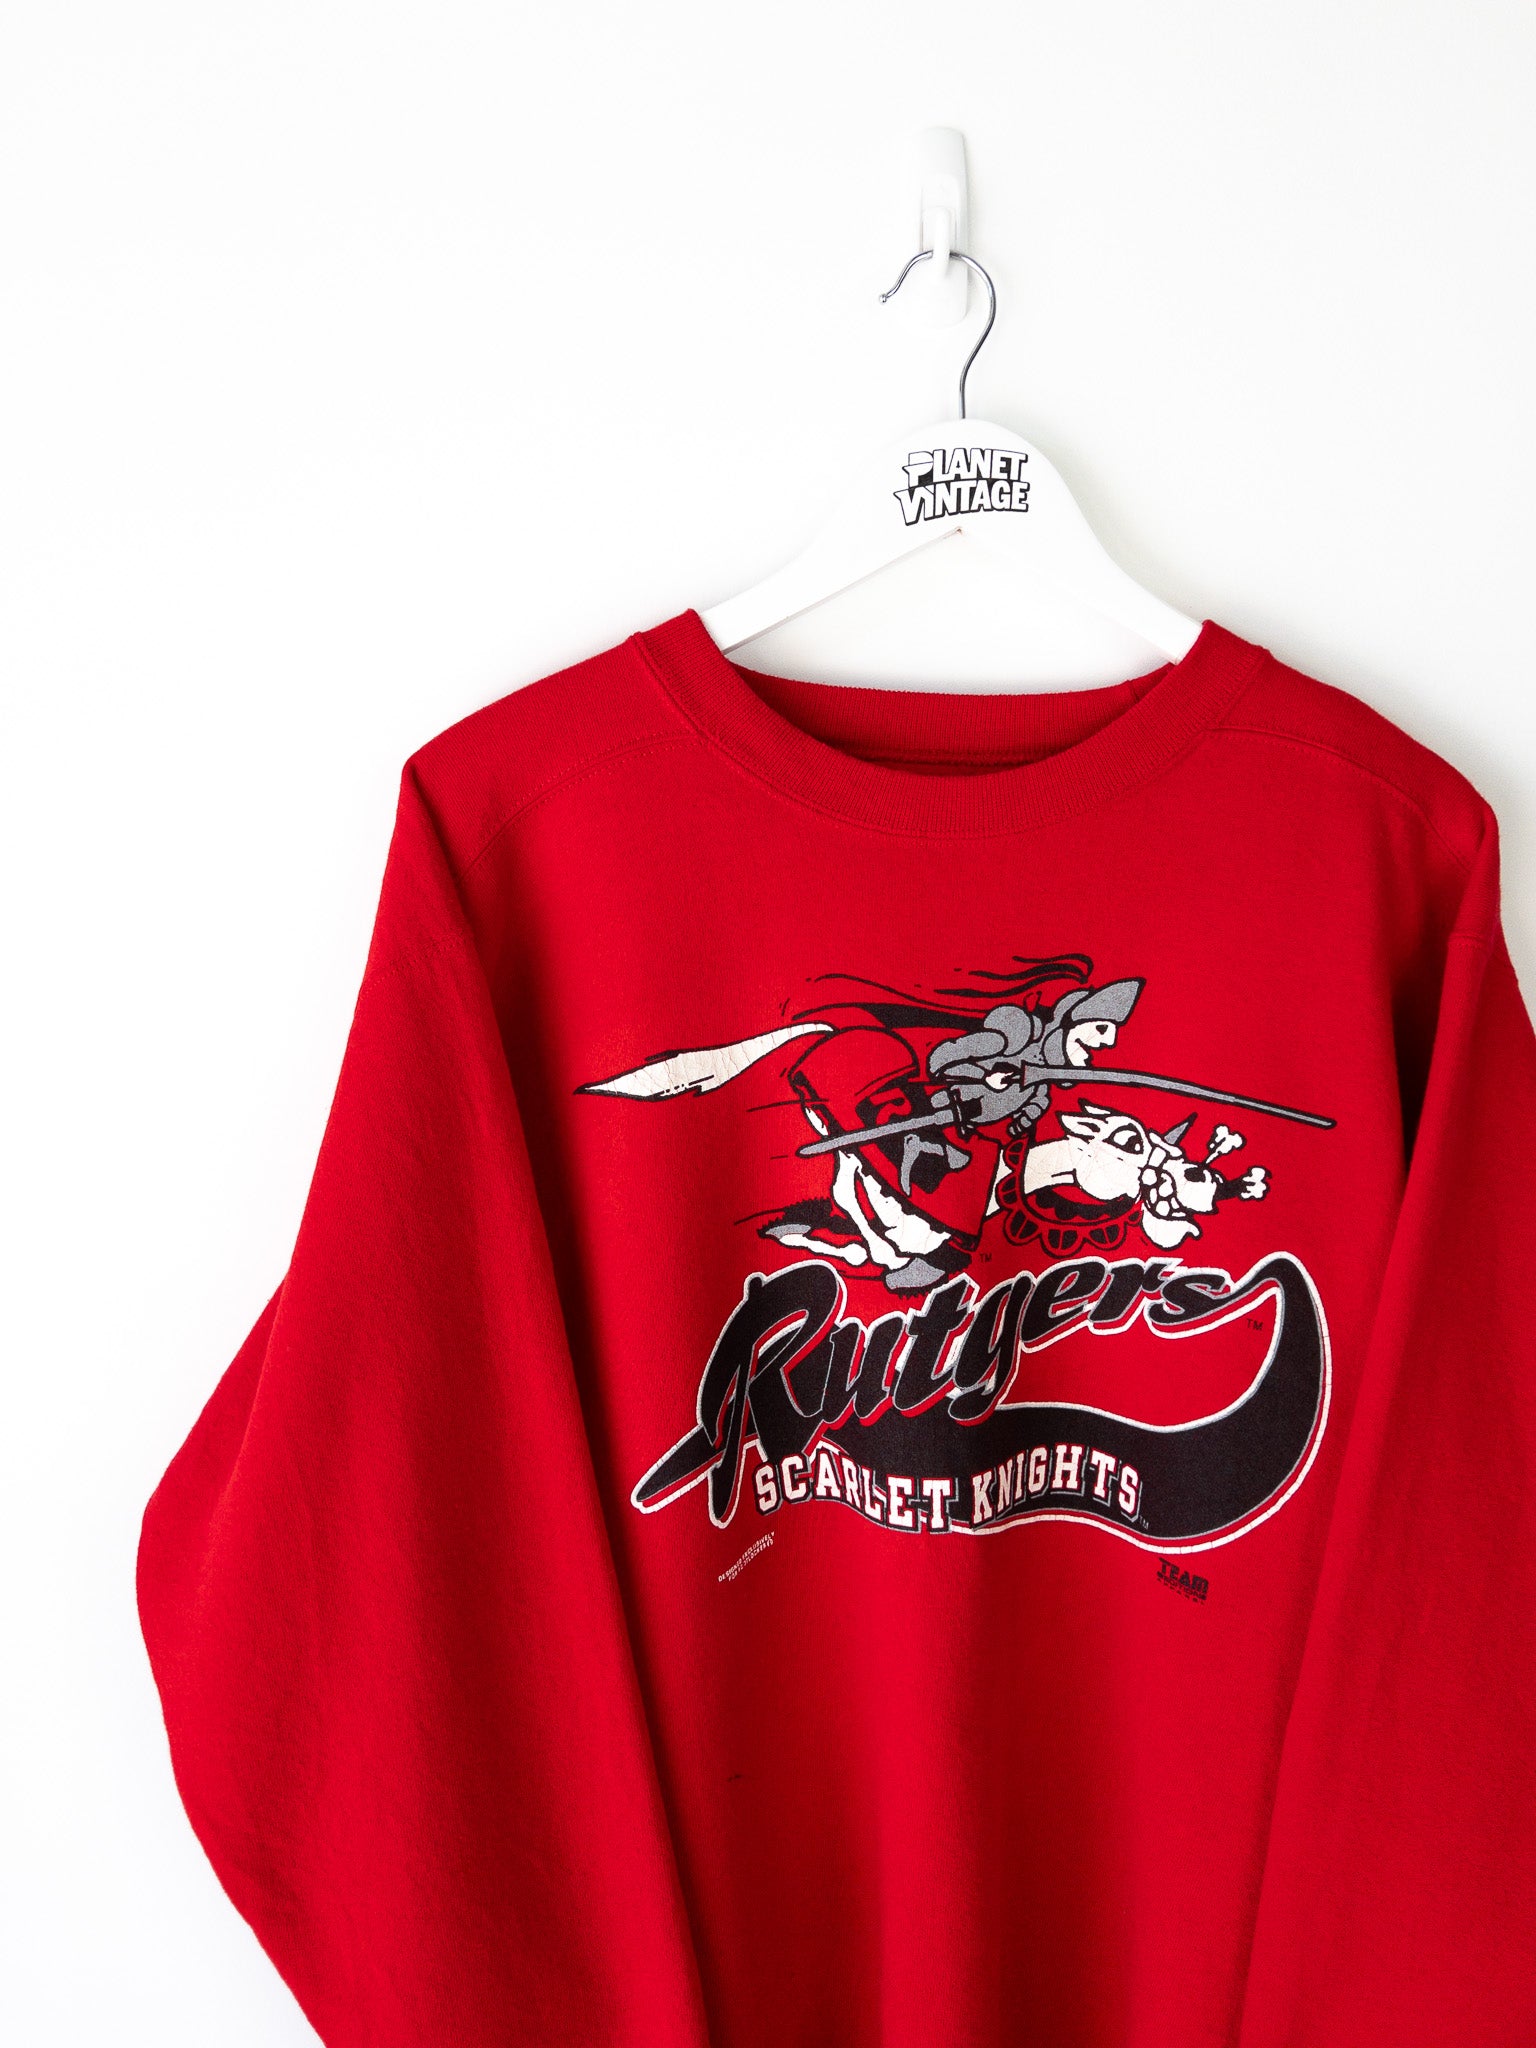 Vintage Scarlet Knights Rutgers Sweatshirt (L)